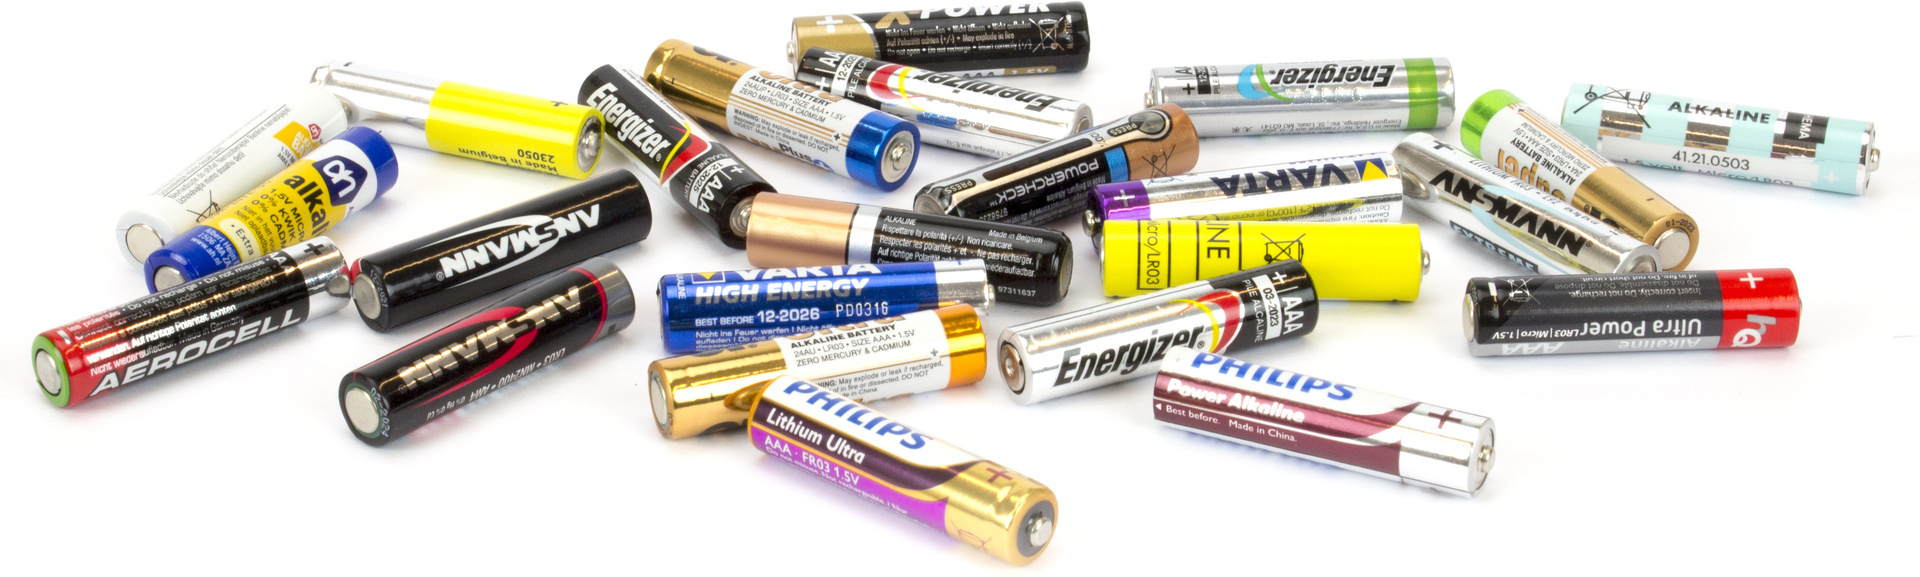 Buitenland Verwaarlozing Vroeg 25 AAA-batterijen getest: klein maar krachtig!? - Hardware Info